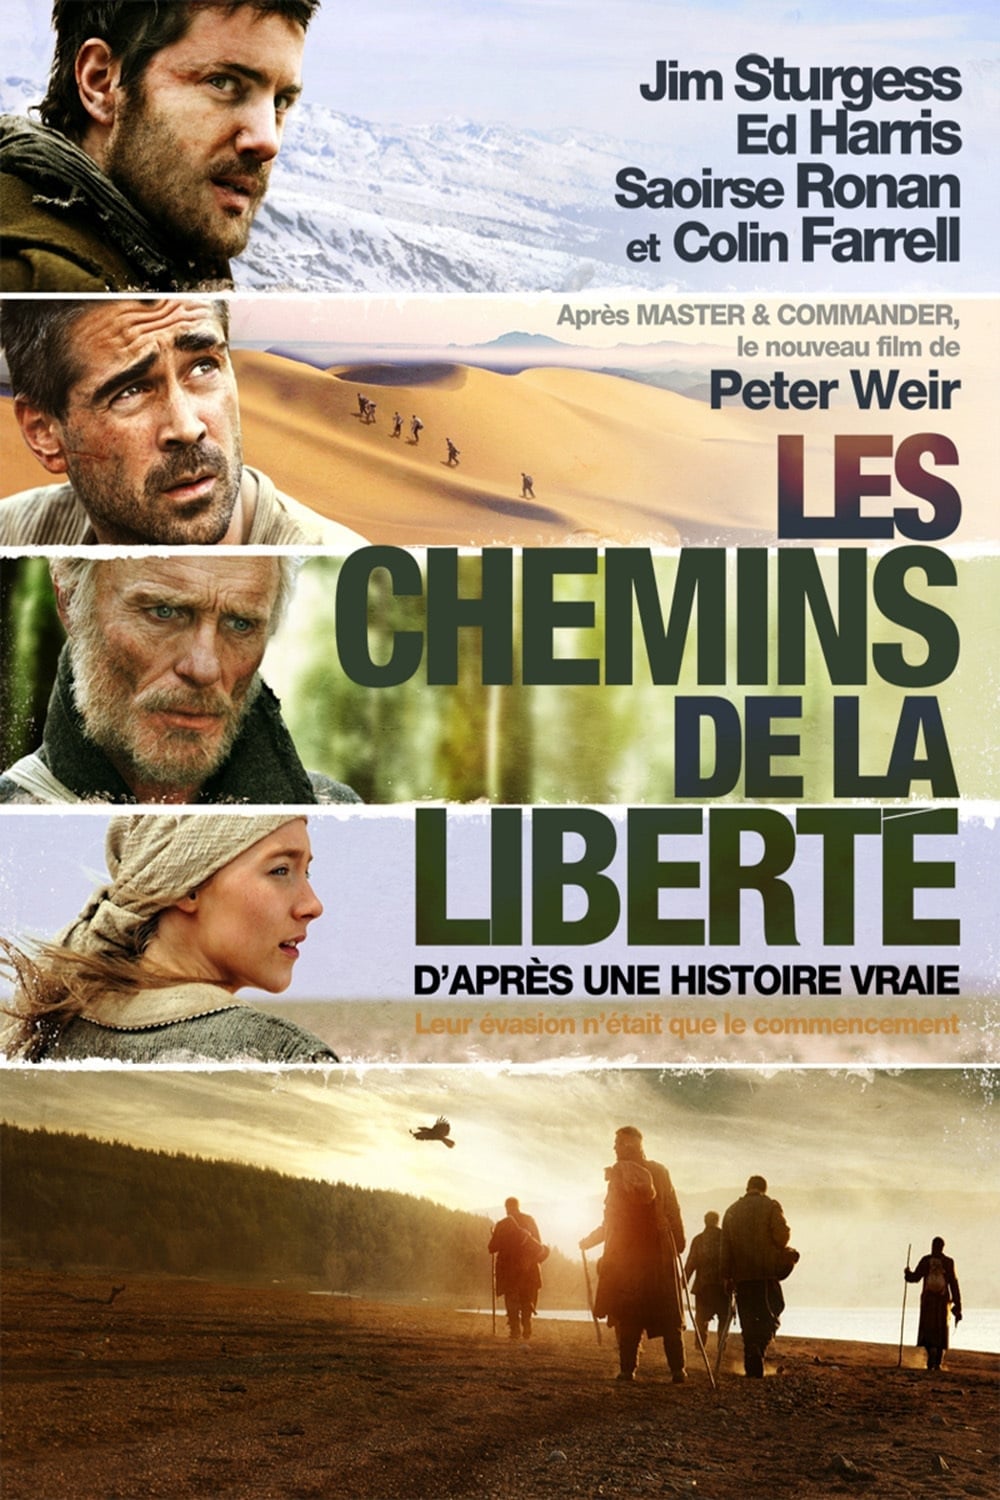 Affiche du film "les chemins de la liberté"